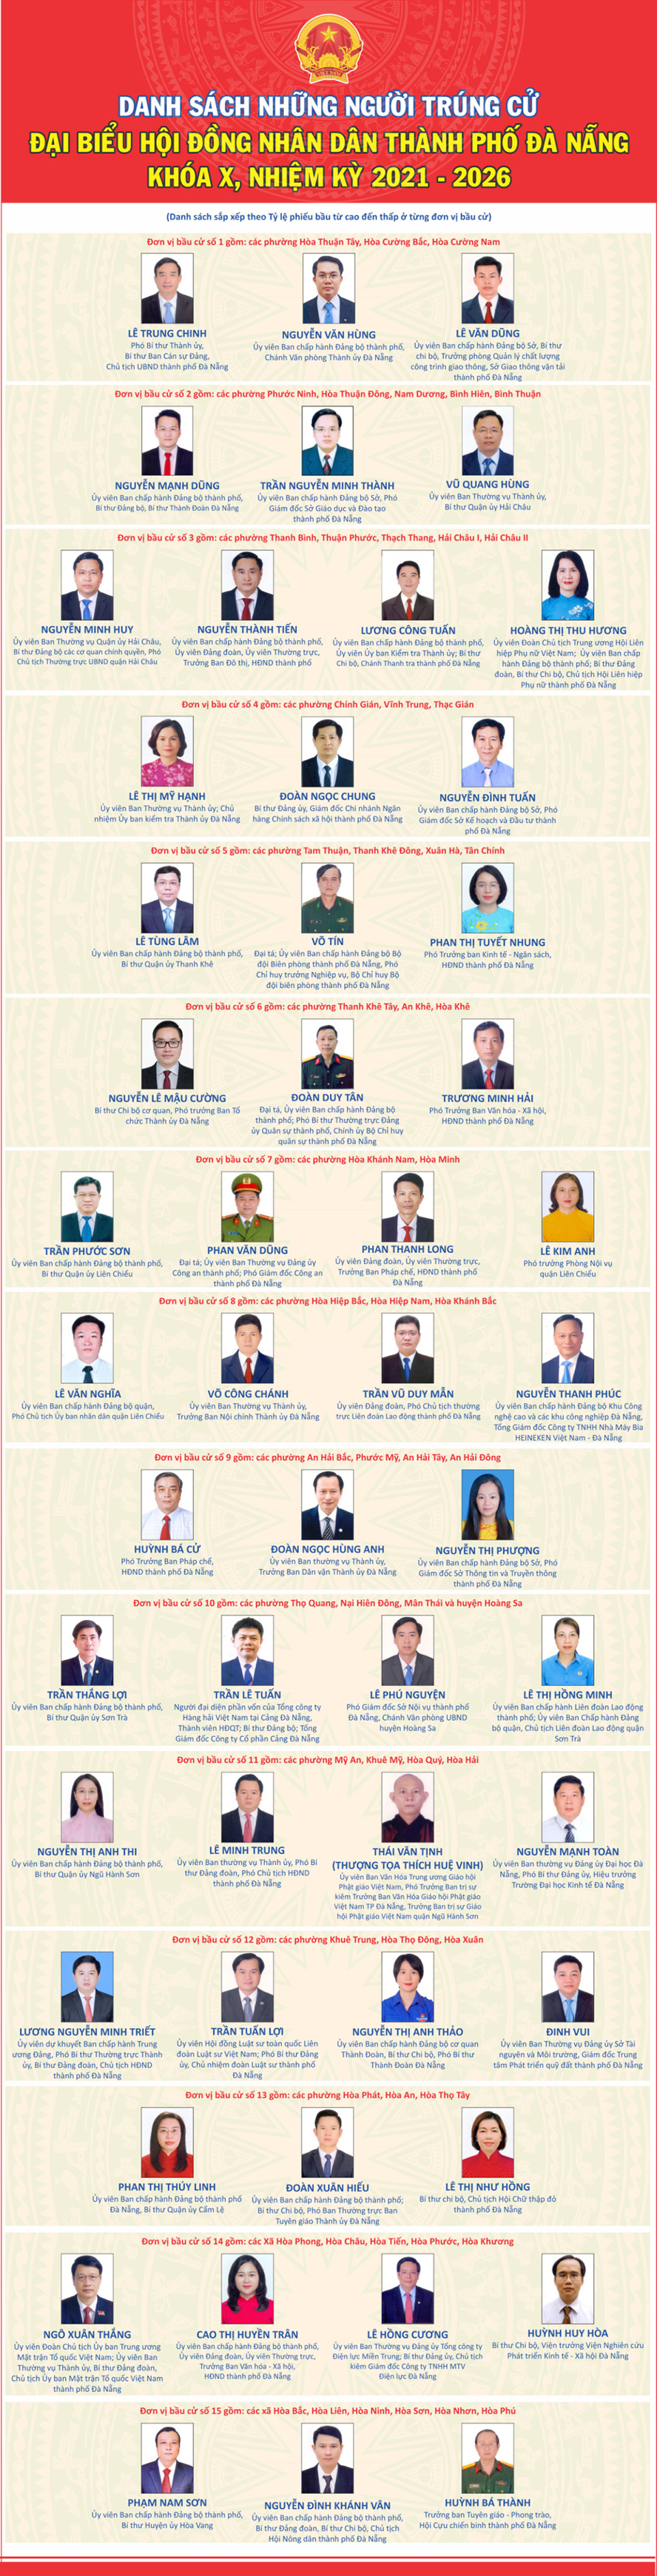 Đà Nẵng công bố kết quả bầu cử đại biểu HĐND TP khóa X, nhiệm kỳ 2021 - 2026 - Ảnh 3